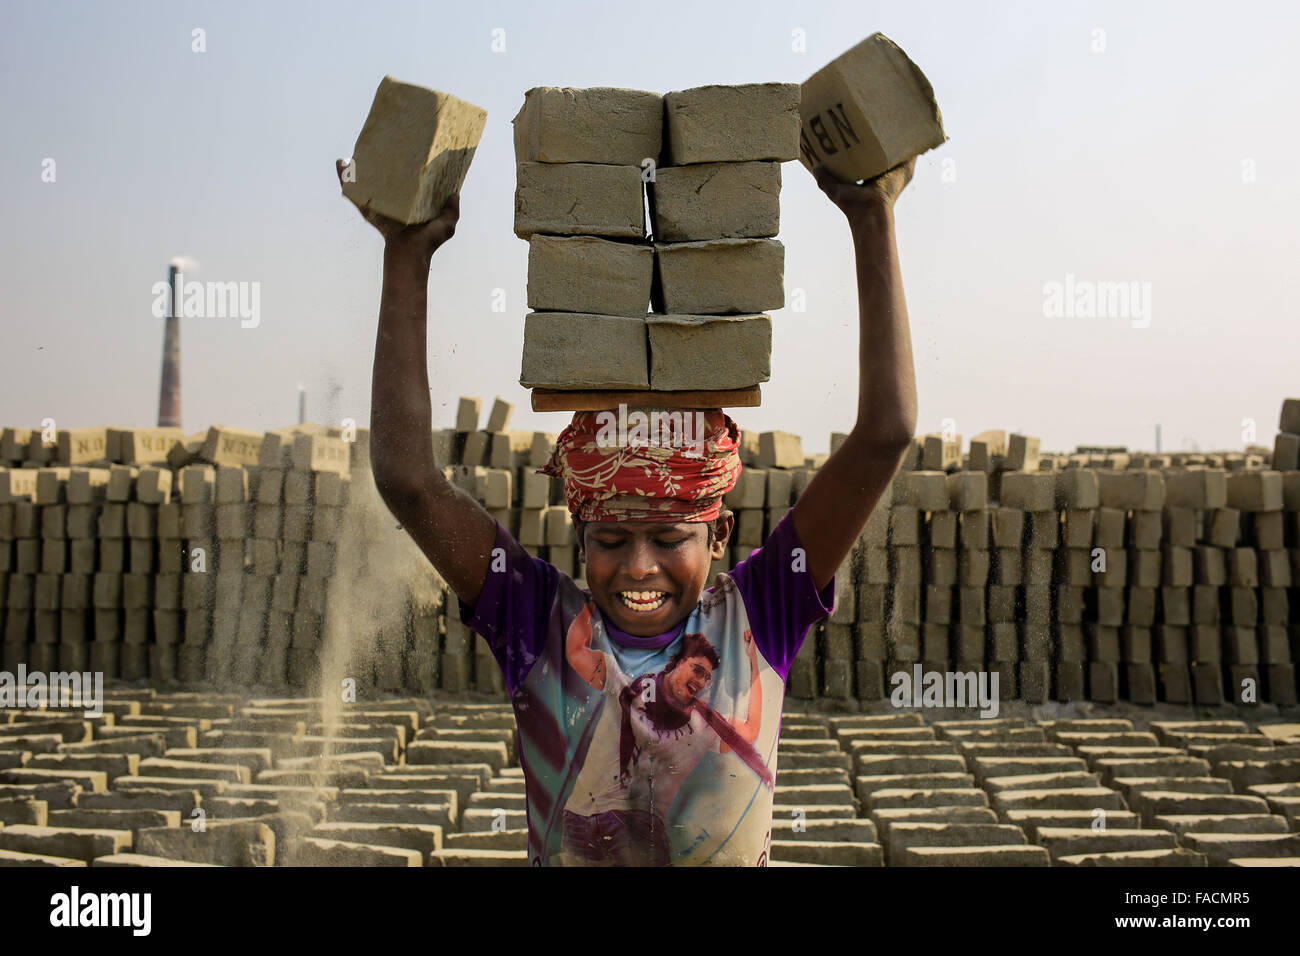 Dhaka, Bangladesh. Dec 27, 2015. SAJIB est un garçon de 12 ans qui travaille dans un chantier de briques. Ses parents travaillent également dans la même cour. Le monde traverse une urbanisation rapide et le Bangladesh n'est pas une exception à cela. Comme l'urbanisation rapide génère une demande massive de briques comme il est l'un des ingrédients clés pour construire la structure en béton. Pour répondre à ce besoin croissant, le nombre de la fabrication de briques domaine augmentent à un rythme alarmant au Bangladesh. La plupart d'entre elles ont lieu dans l'agriculture des terres qui entraîne un ralentissement de la production agricole. Banque D'Images